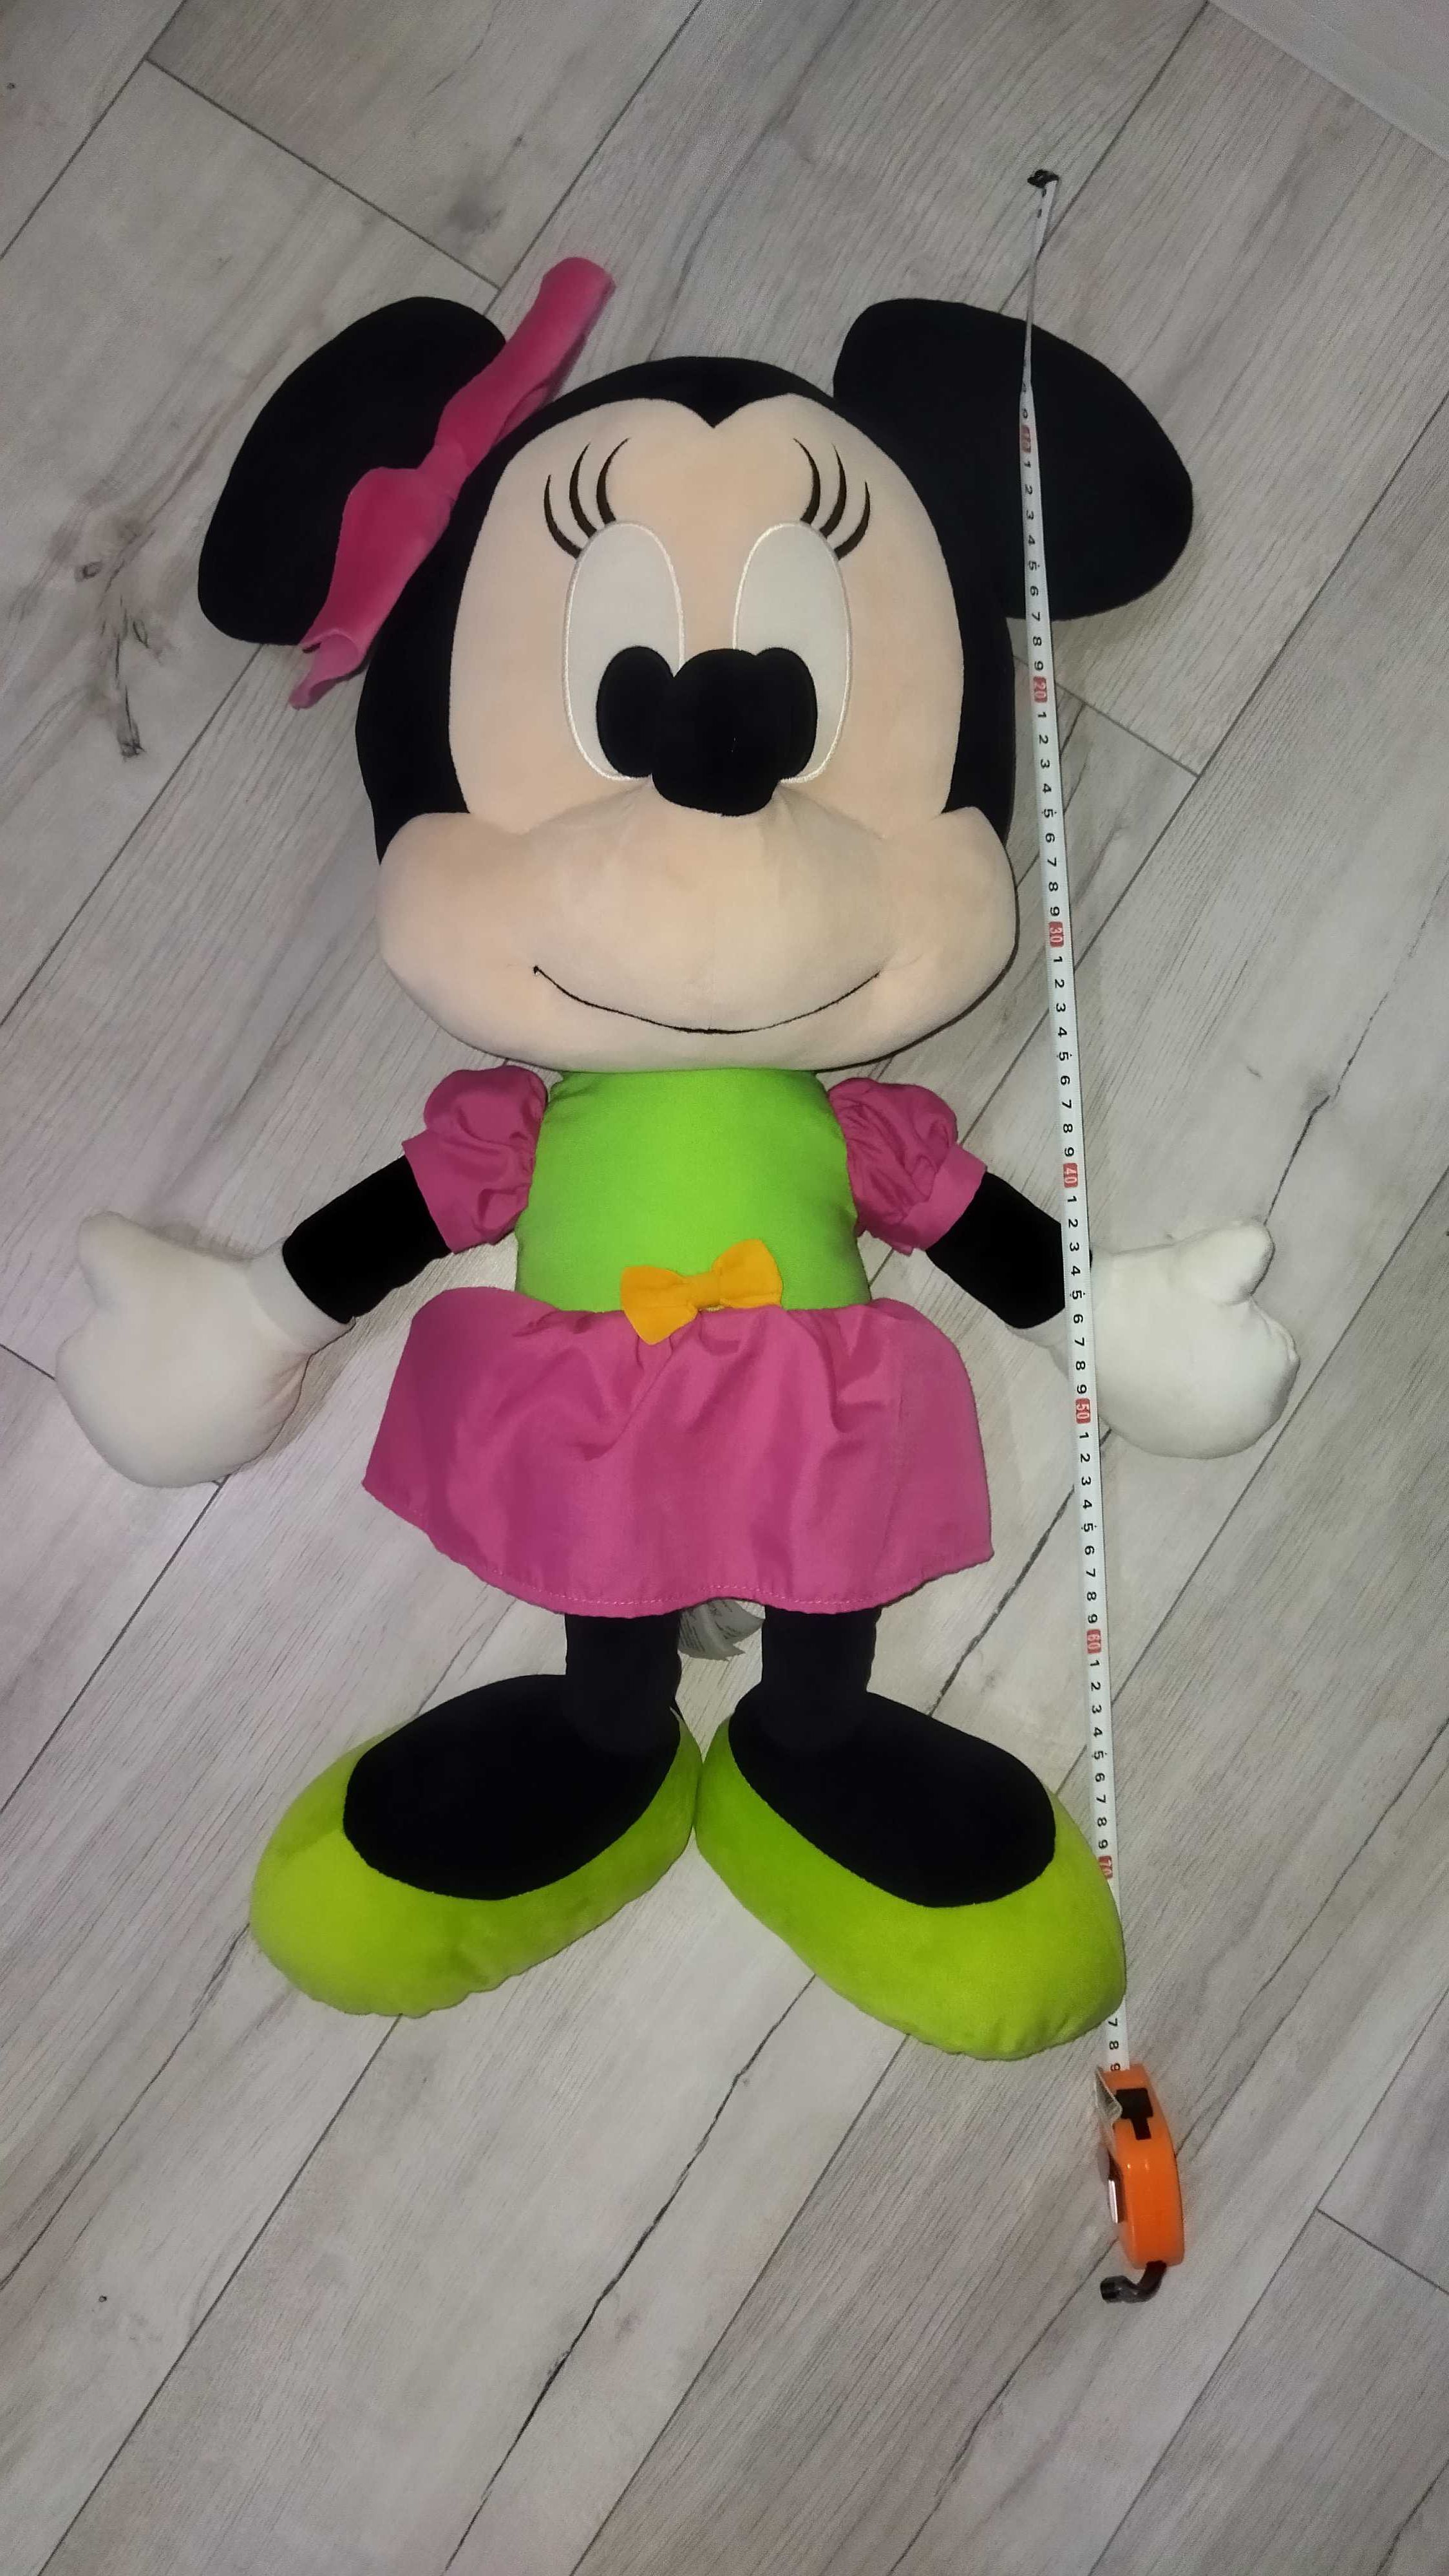 Wielka myszka Minnie maskotka myszka Minnie Disney zabawka